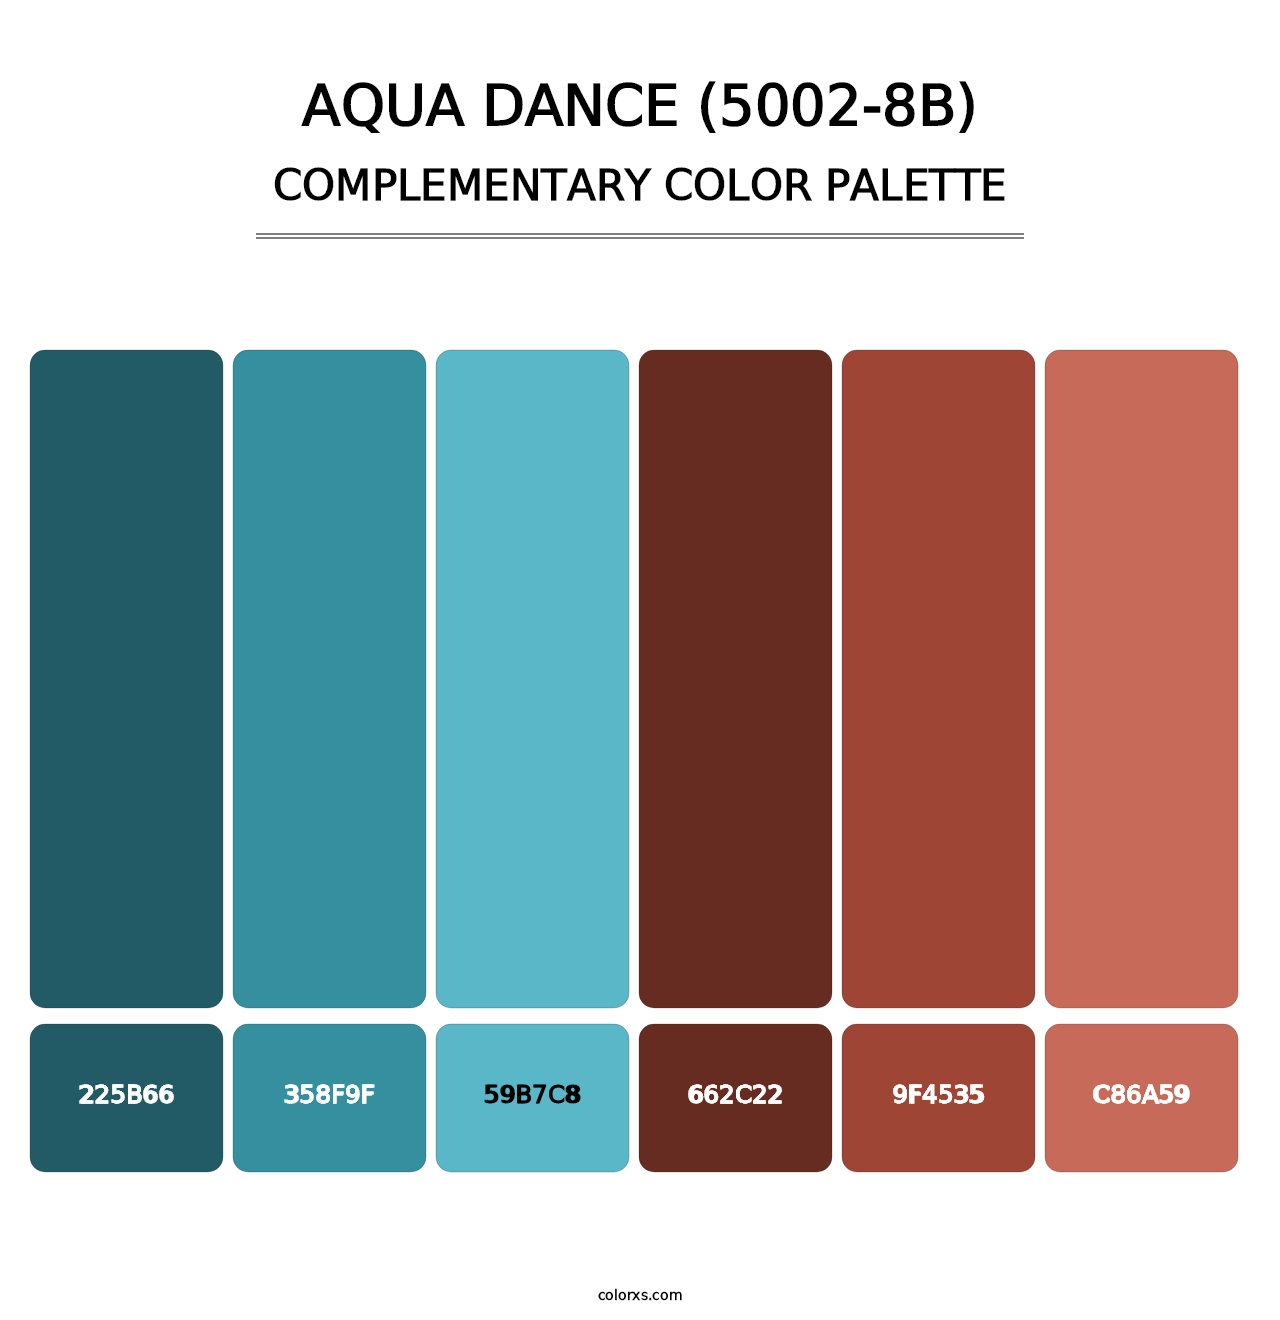 Aqua Dance (5002-8B) - Complementary Color Palette